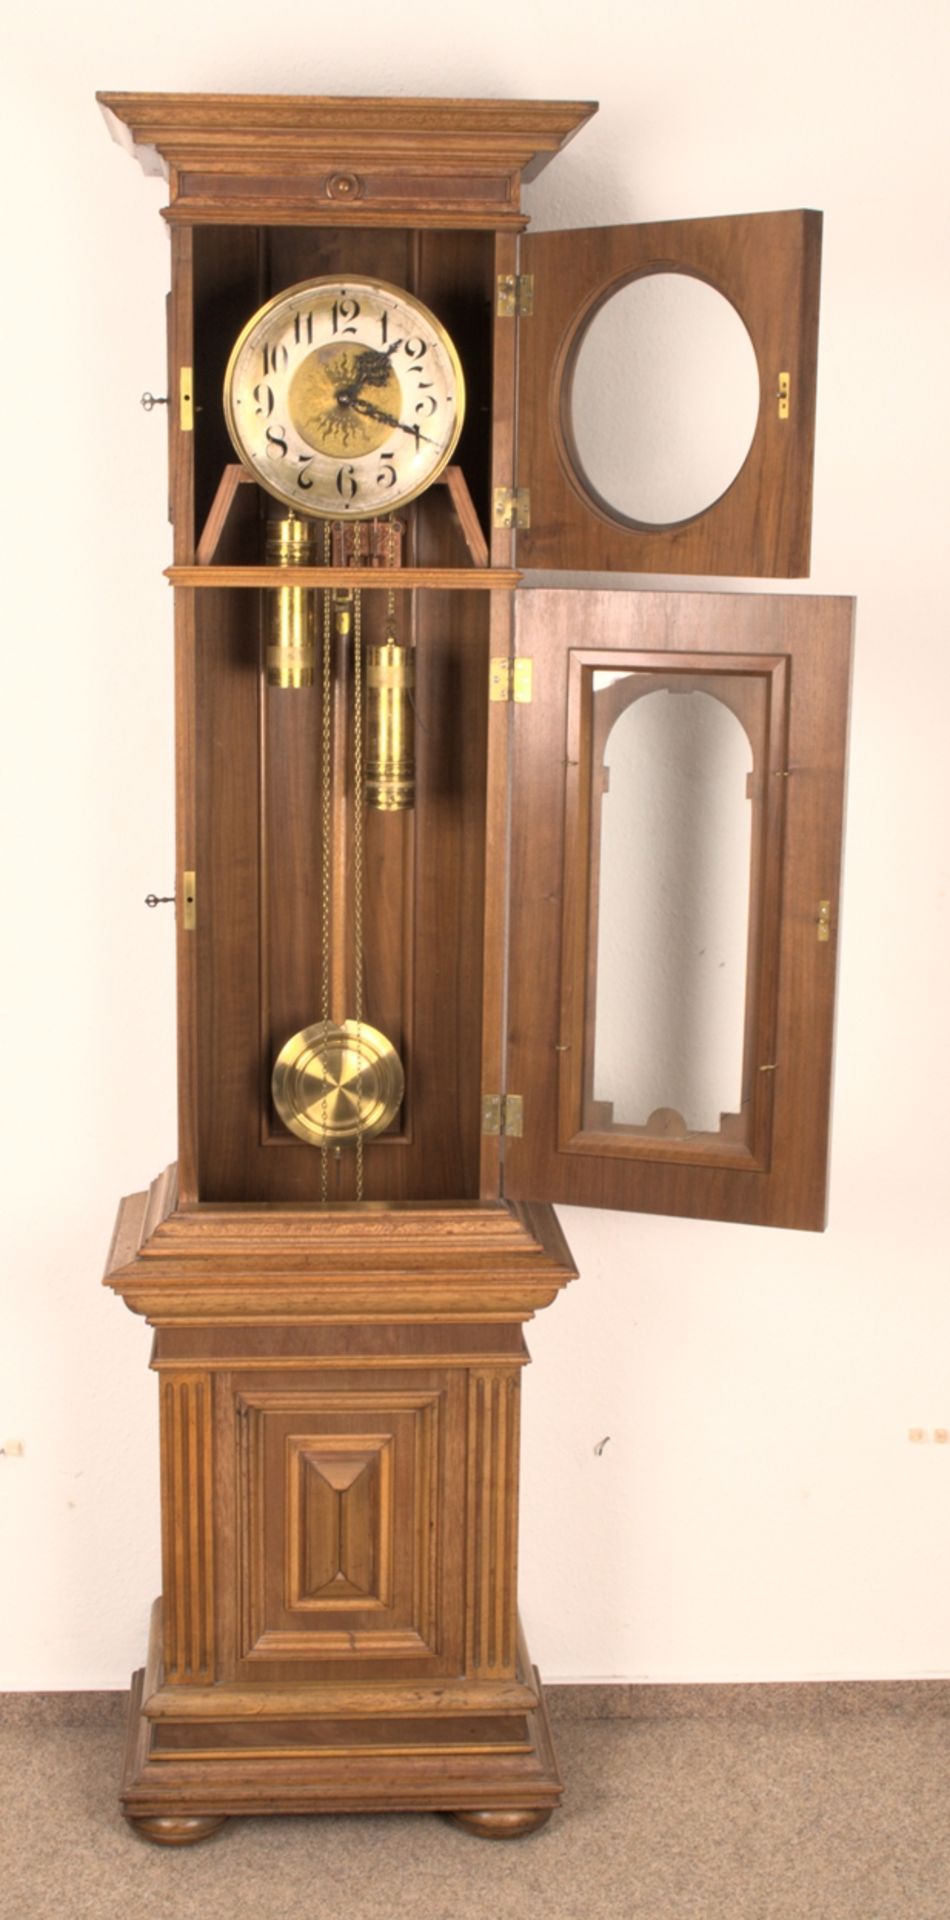 Antike Bodenstanduhr, Historismus um 1880/90, zweigewichtiges, ungeprüftes, mechanisches Uhrwerk der - Bild 4 aus 27